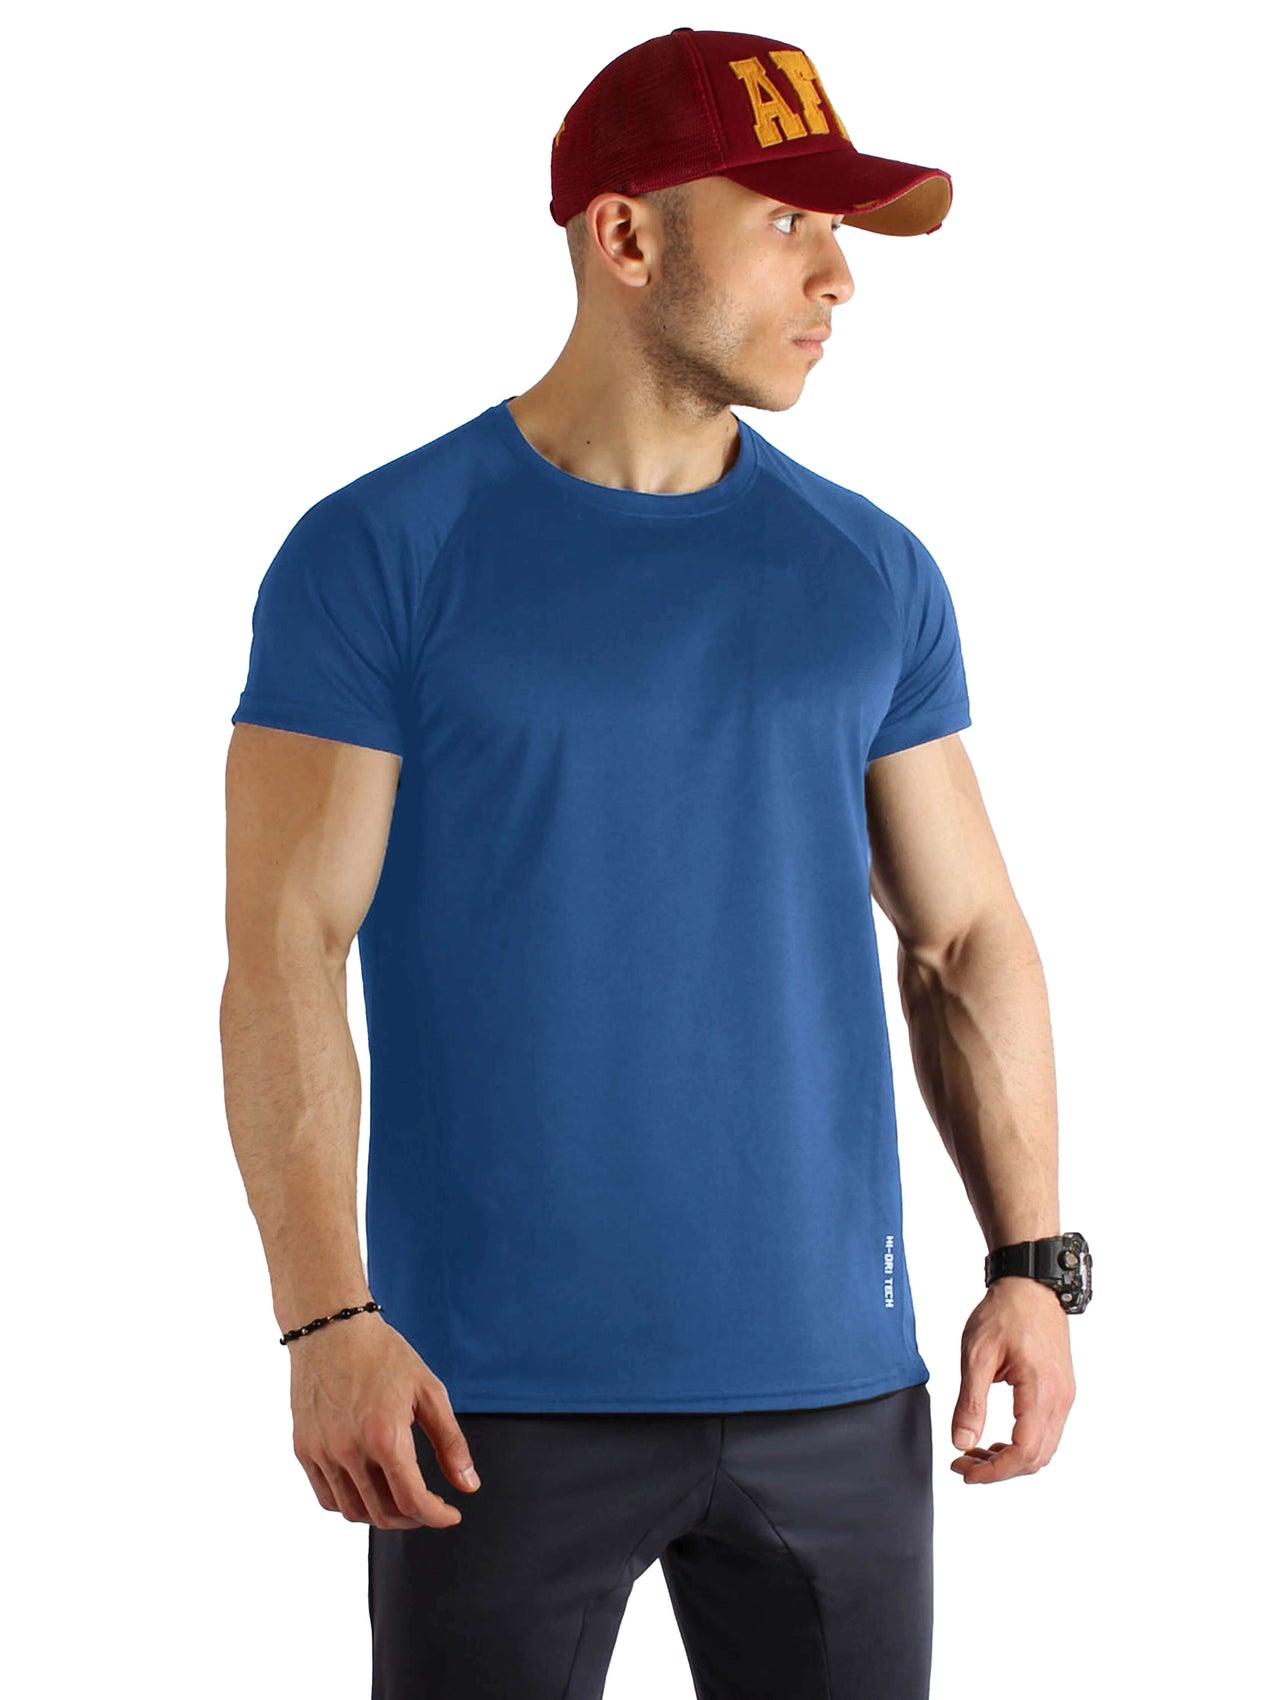 RTP13 Hi-Dri Raglan T-Shirt - Royal Blue